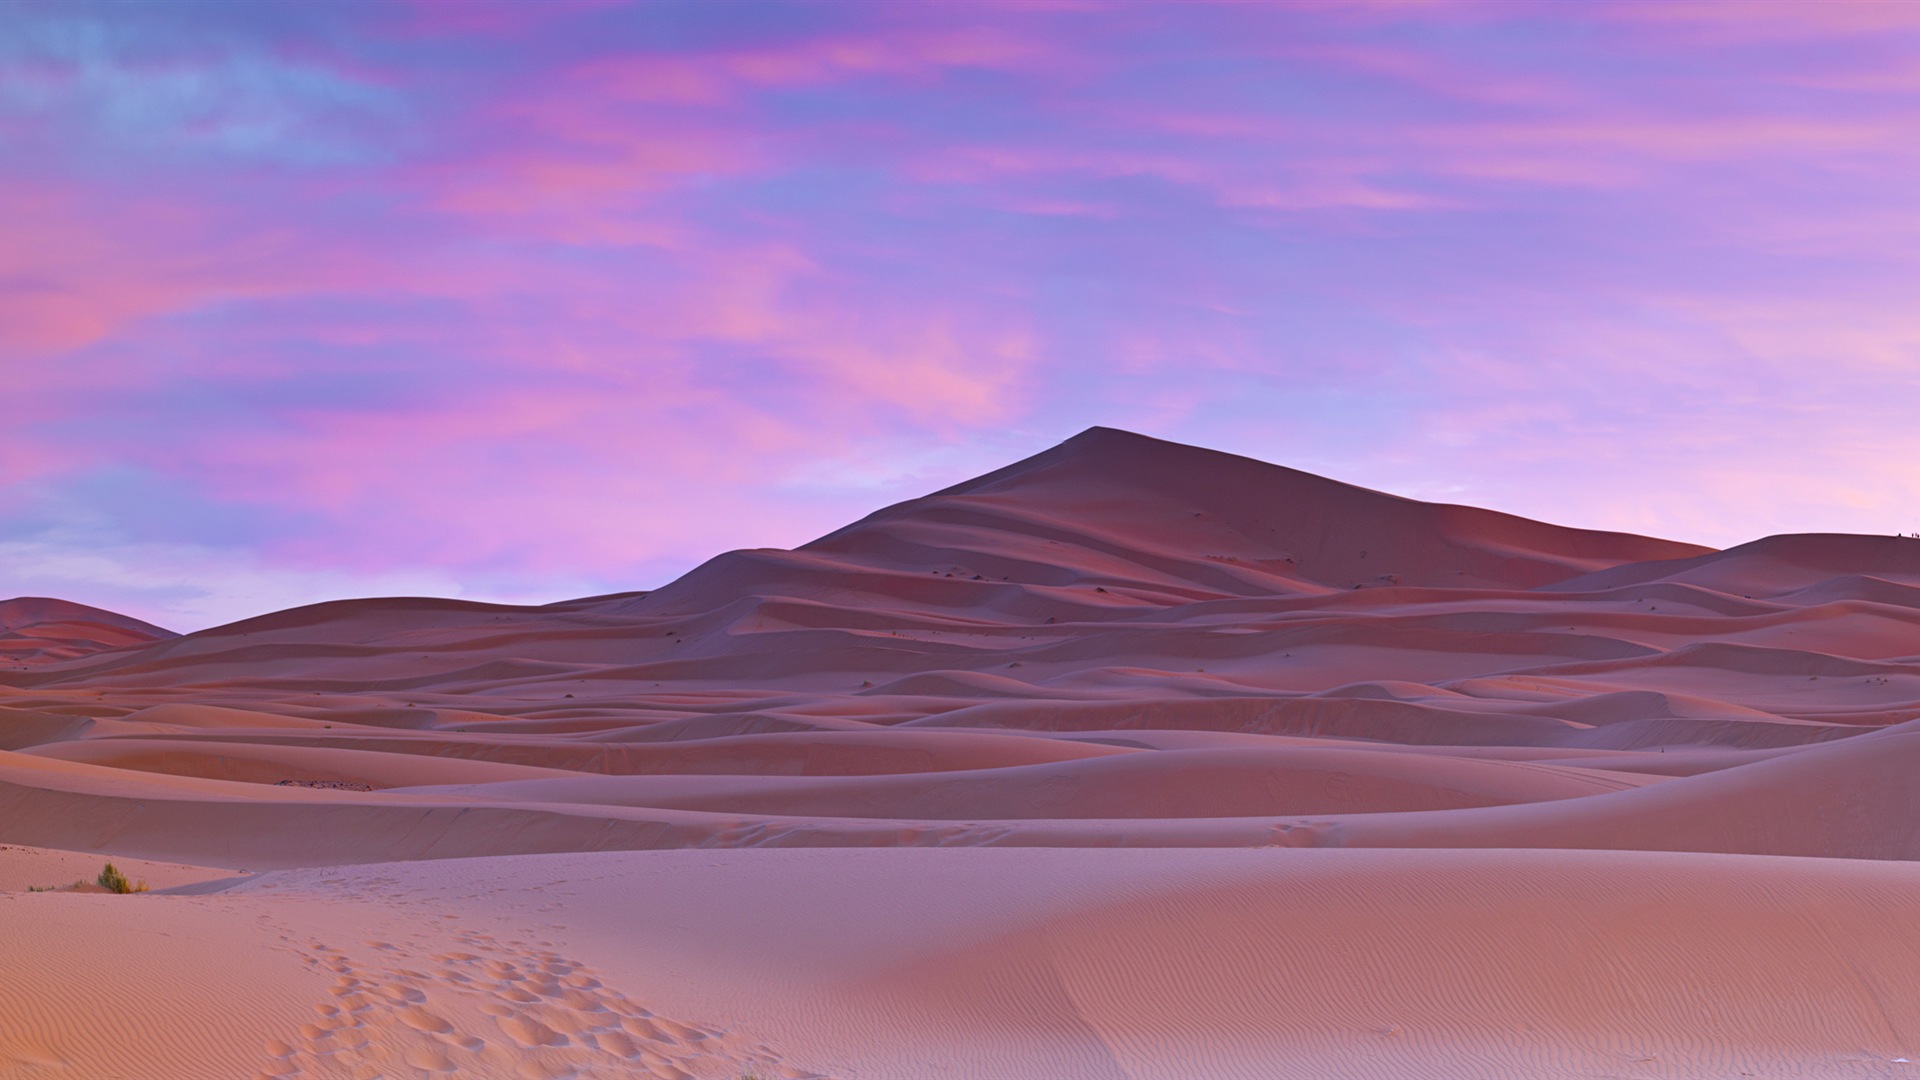 Les déserts chauds et arides, de Windows 8 fonds d'écran widescreen panoramique #1 - 1920x1080